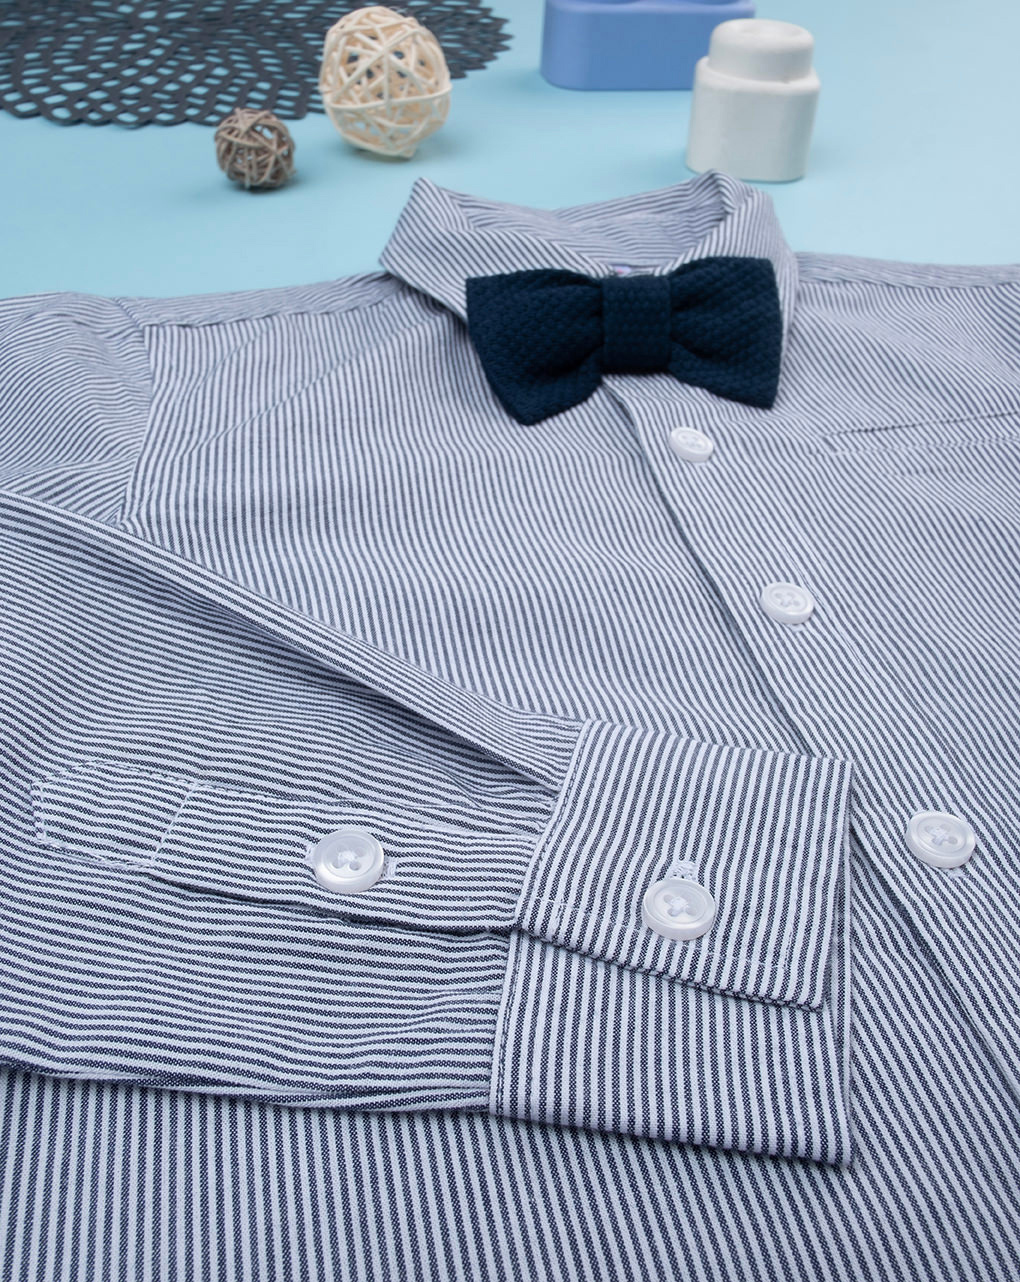 παιδικό πουκάμισο ριγέ μπλε/λευκό για αγόρι - Prénatal